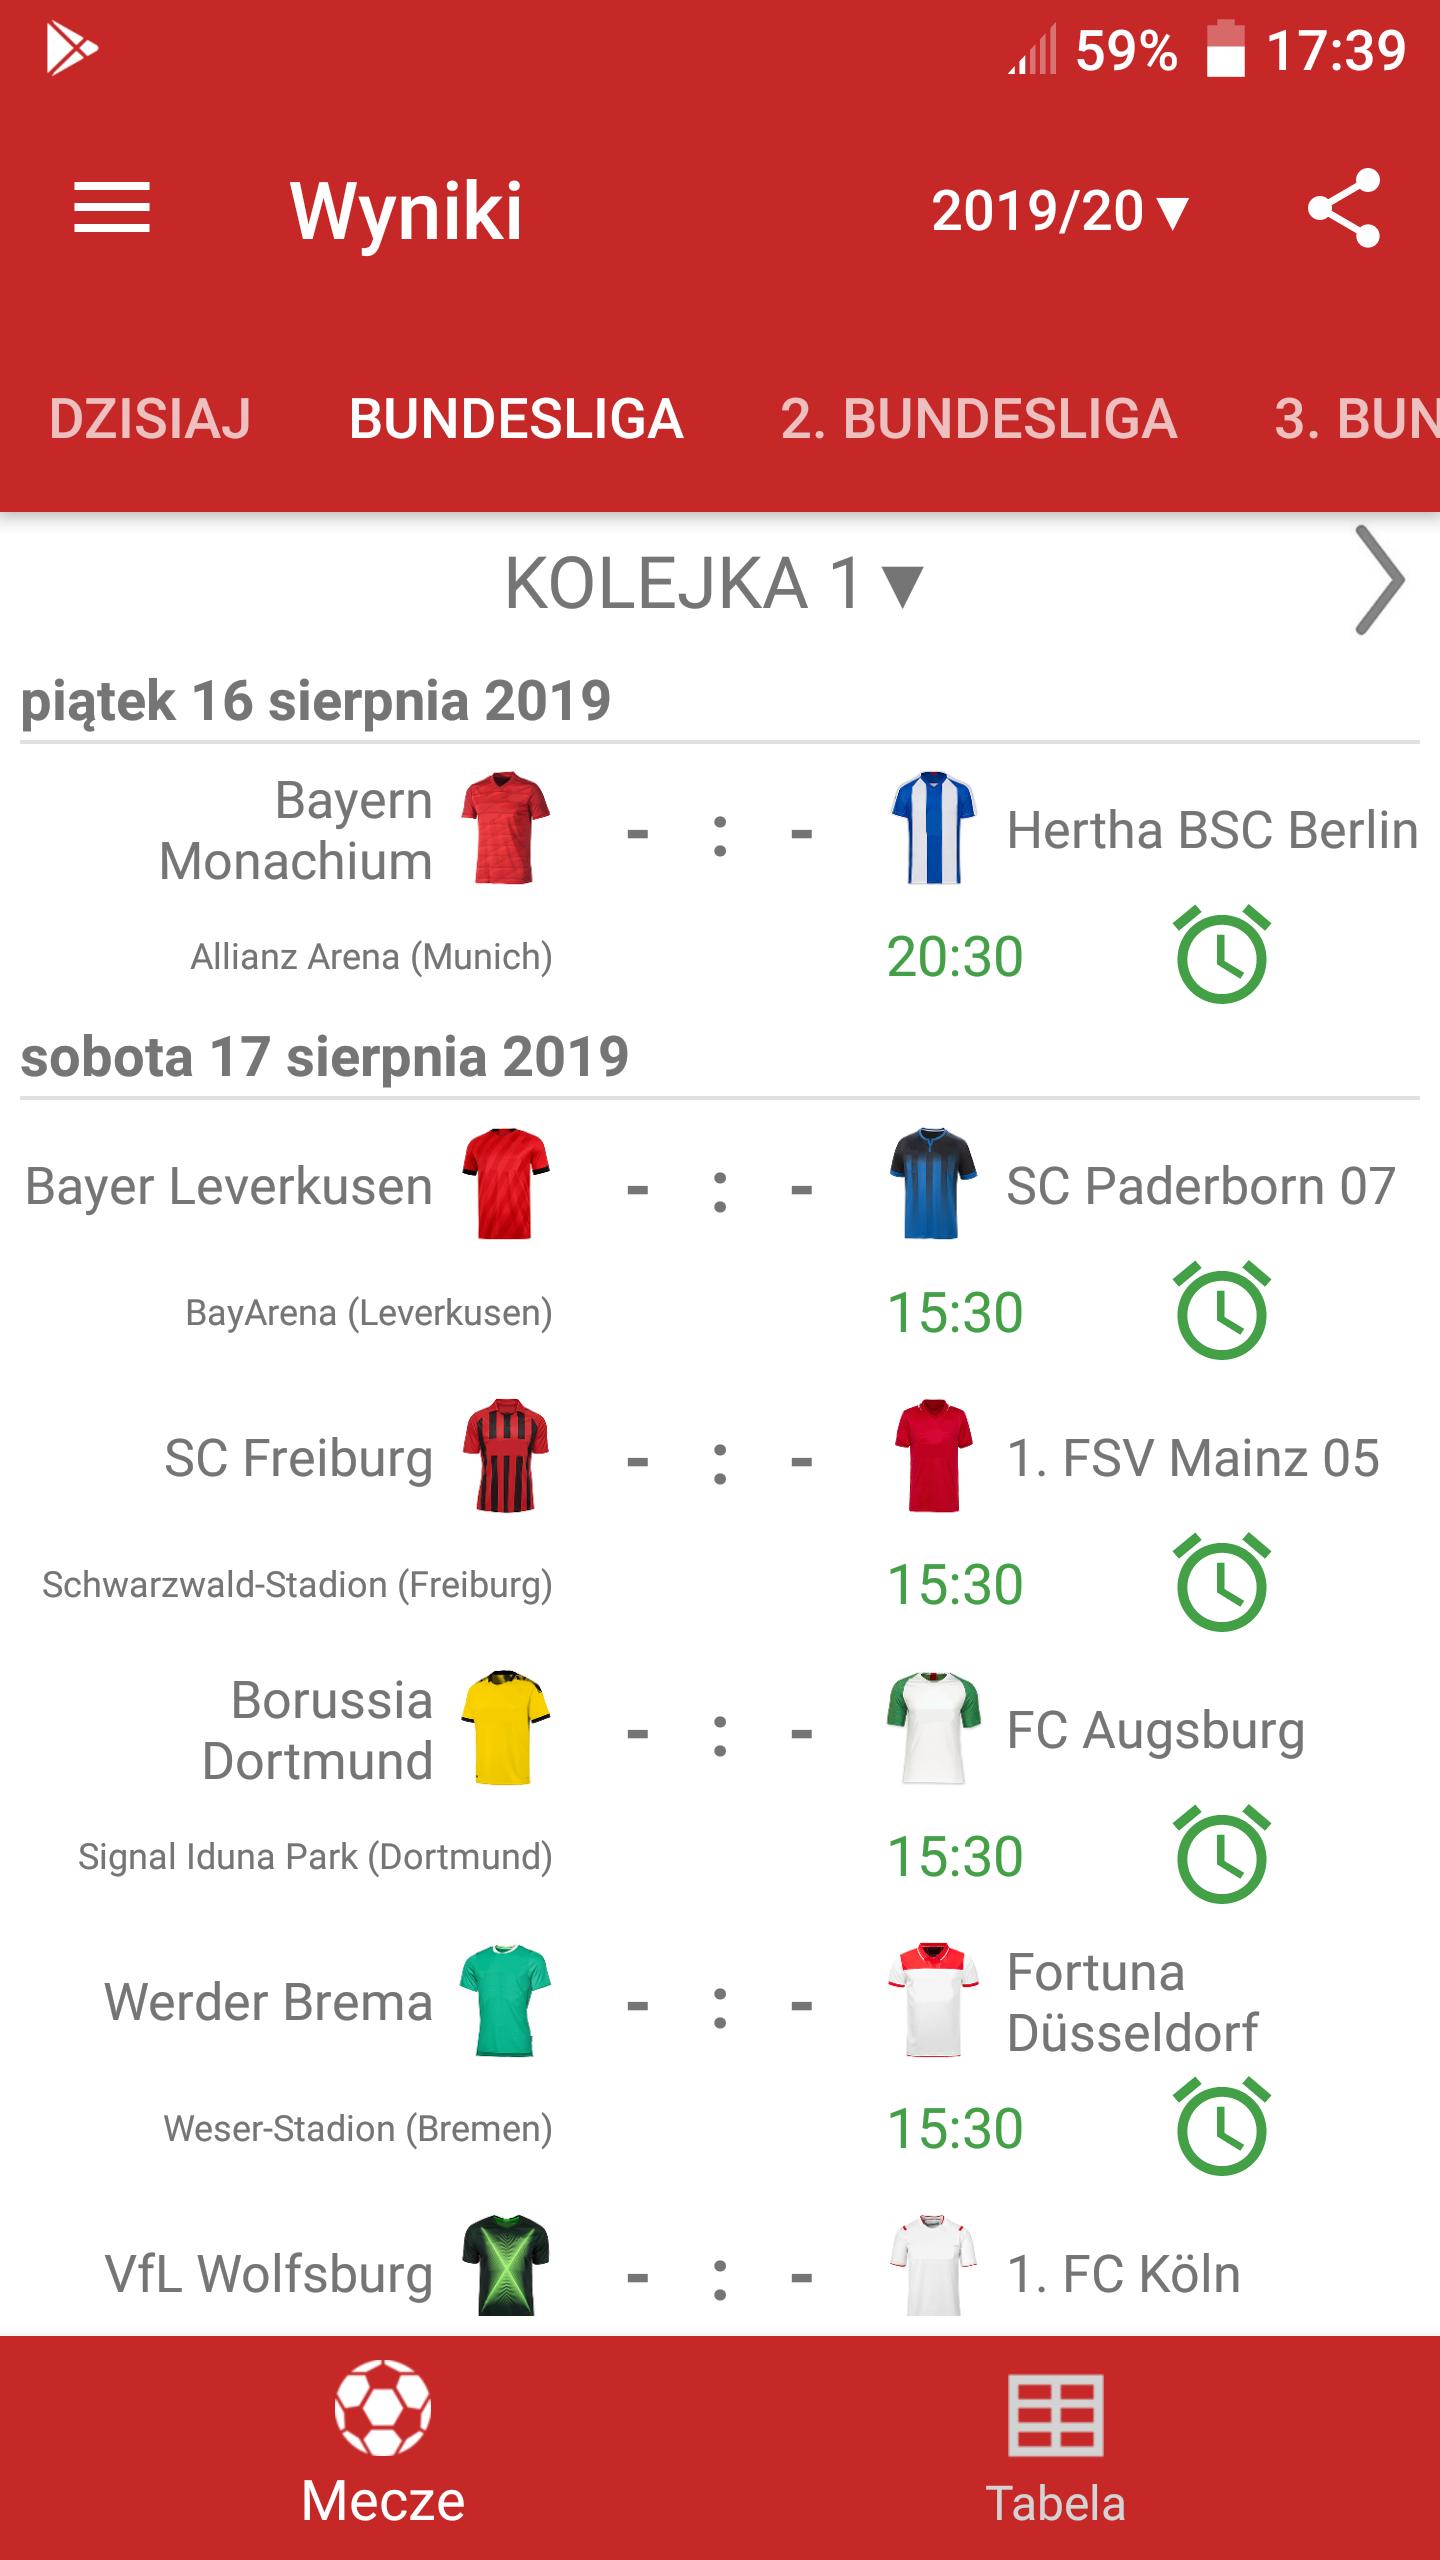 Wyniki na żywo do Bundesligi for Android - APK Download